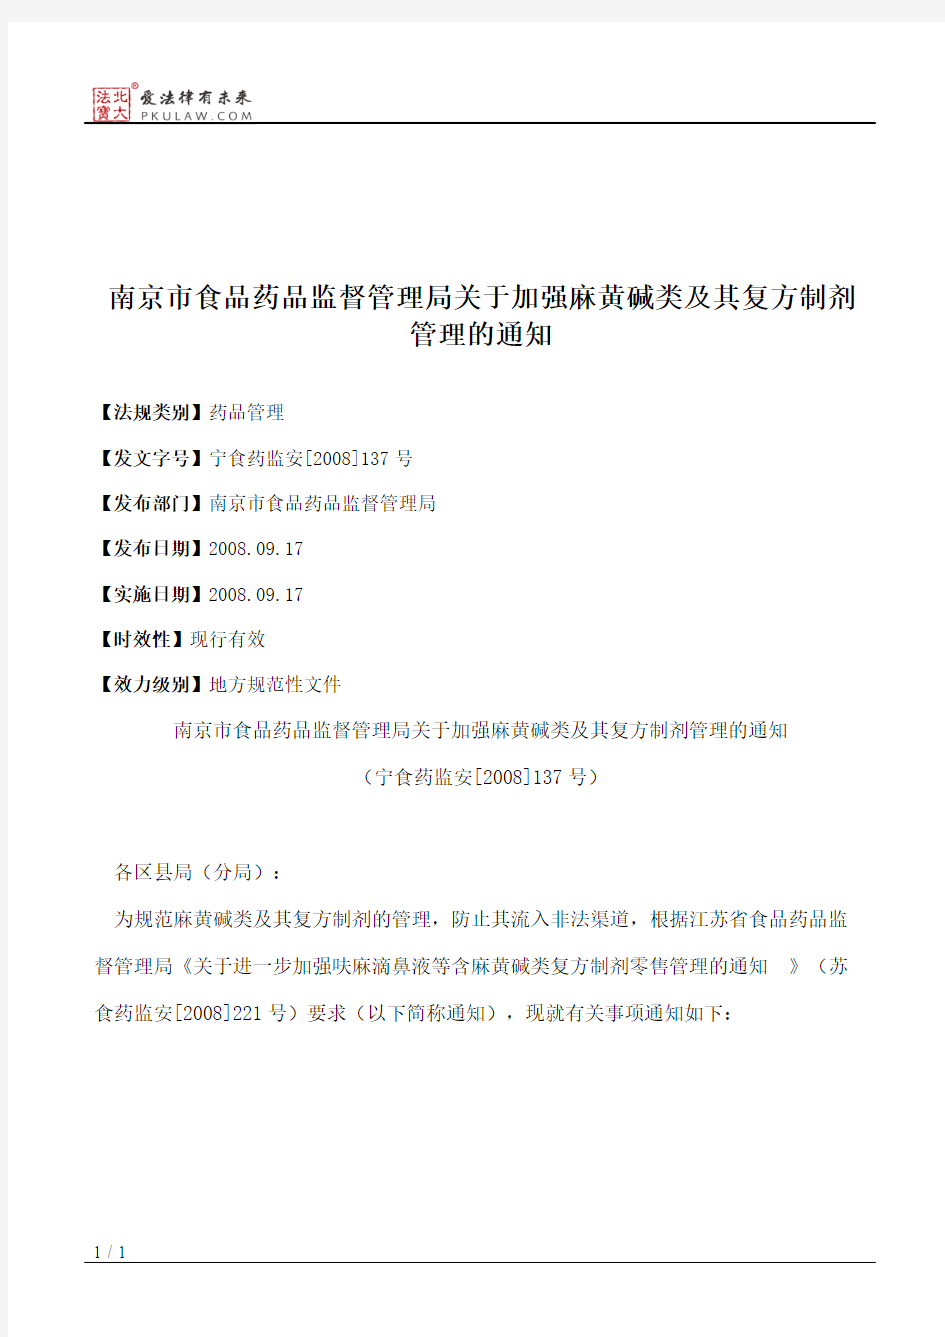 南京市食品药品监督管理局关于加强麻黄碱类及其复方制剂管理的通知